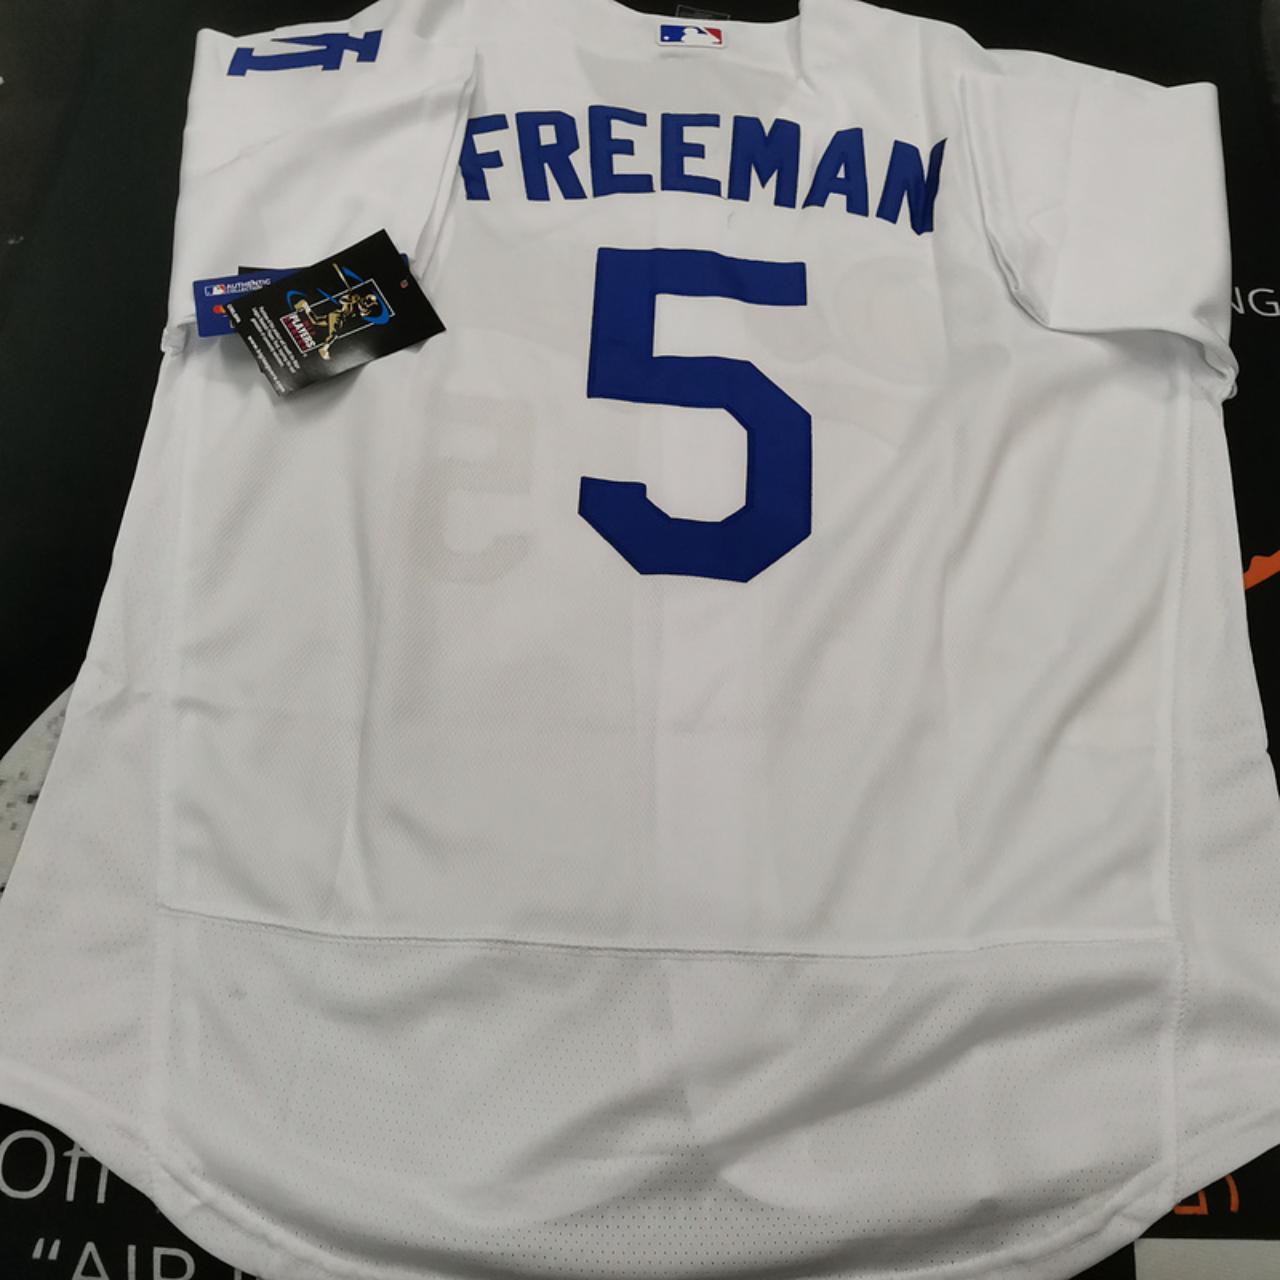 Nike Men's Los Angeles Dodgers Freddie Freeman #5 Blue T-Shirt